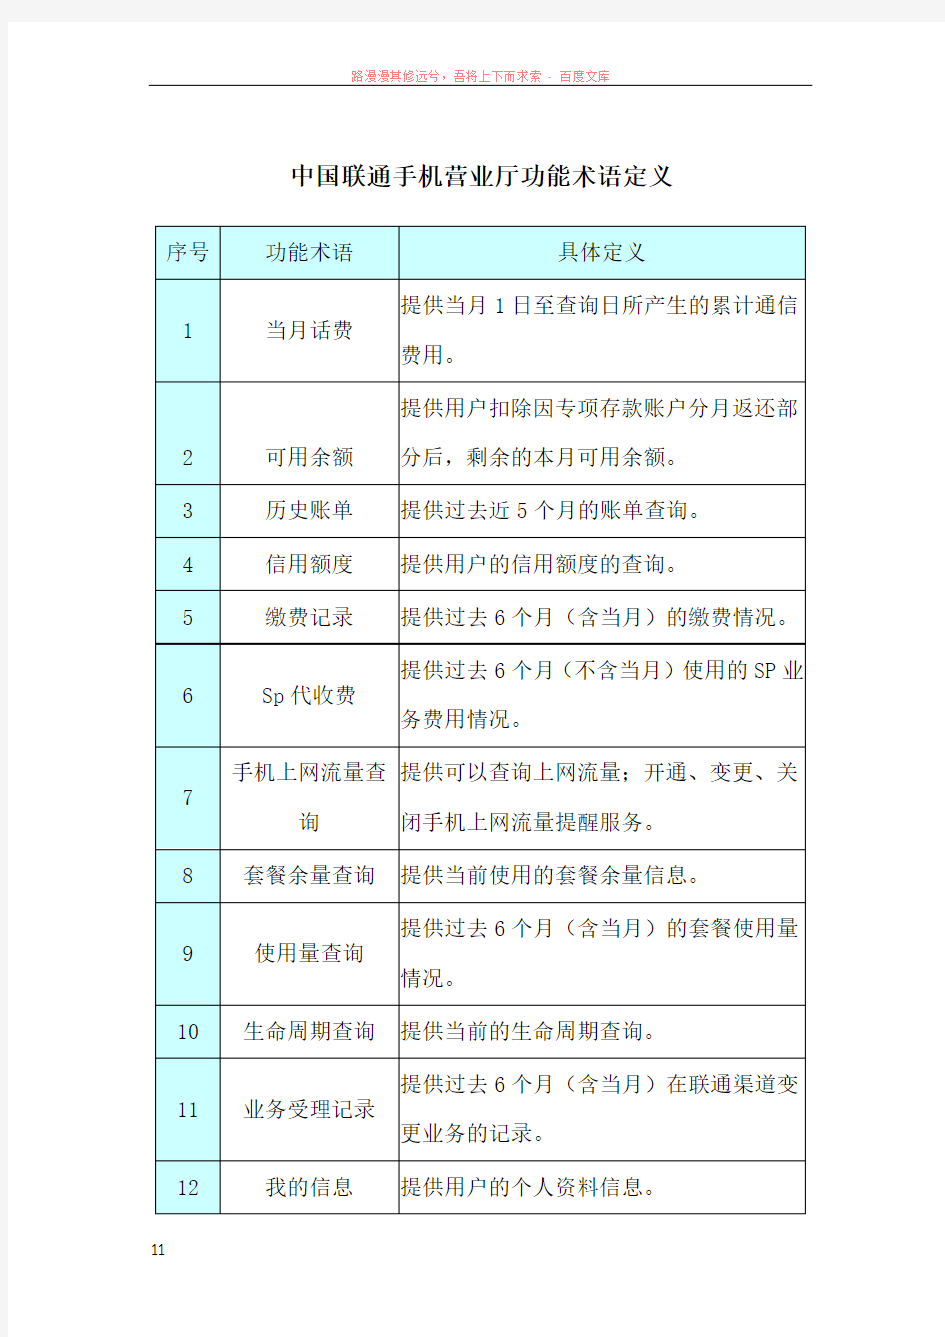 中国联通手机营业厅功能术语定义